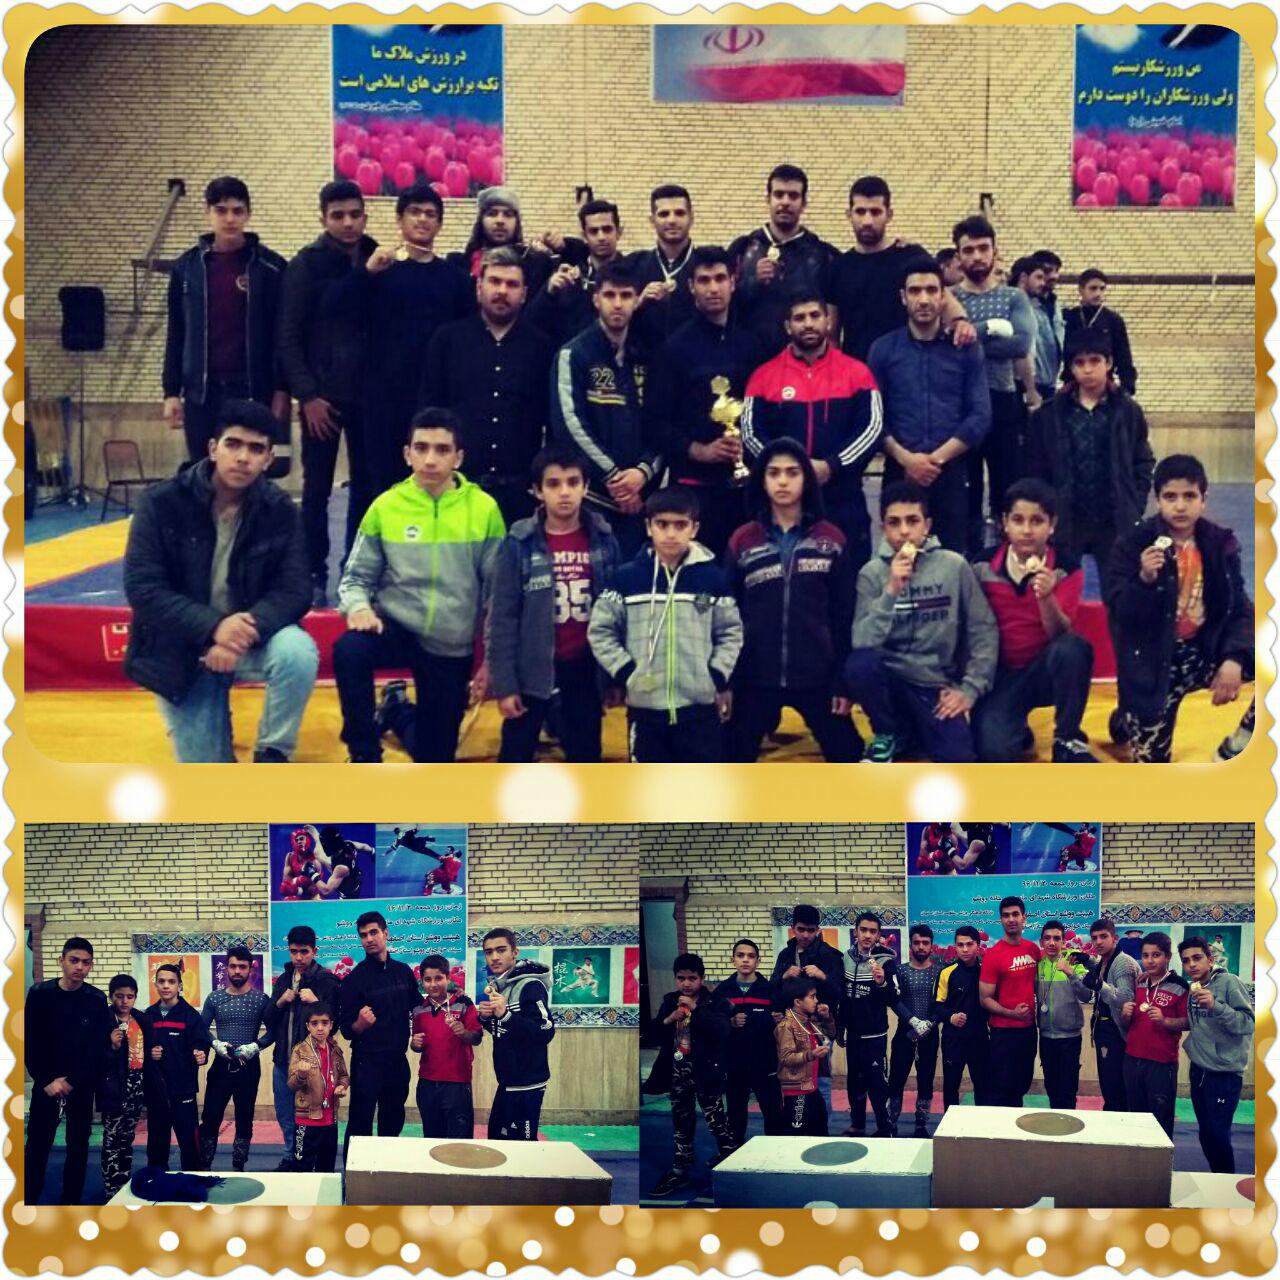 کسب مدال دومی تیم دانش آموزی ووشوی مهردشت در مسابقات قهرمانی استان اصفهان